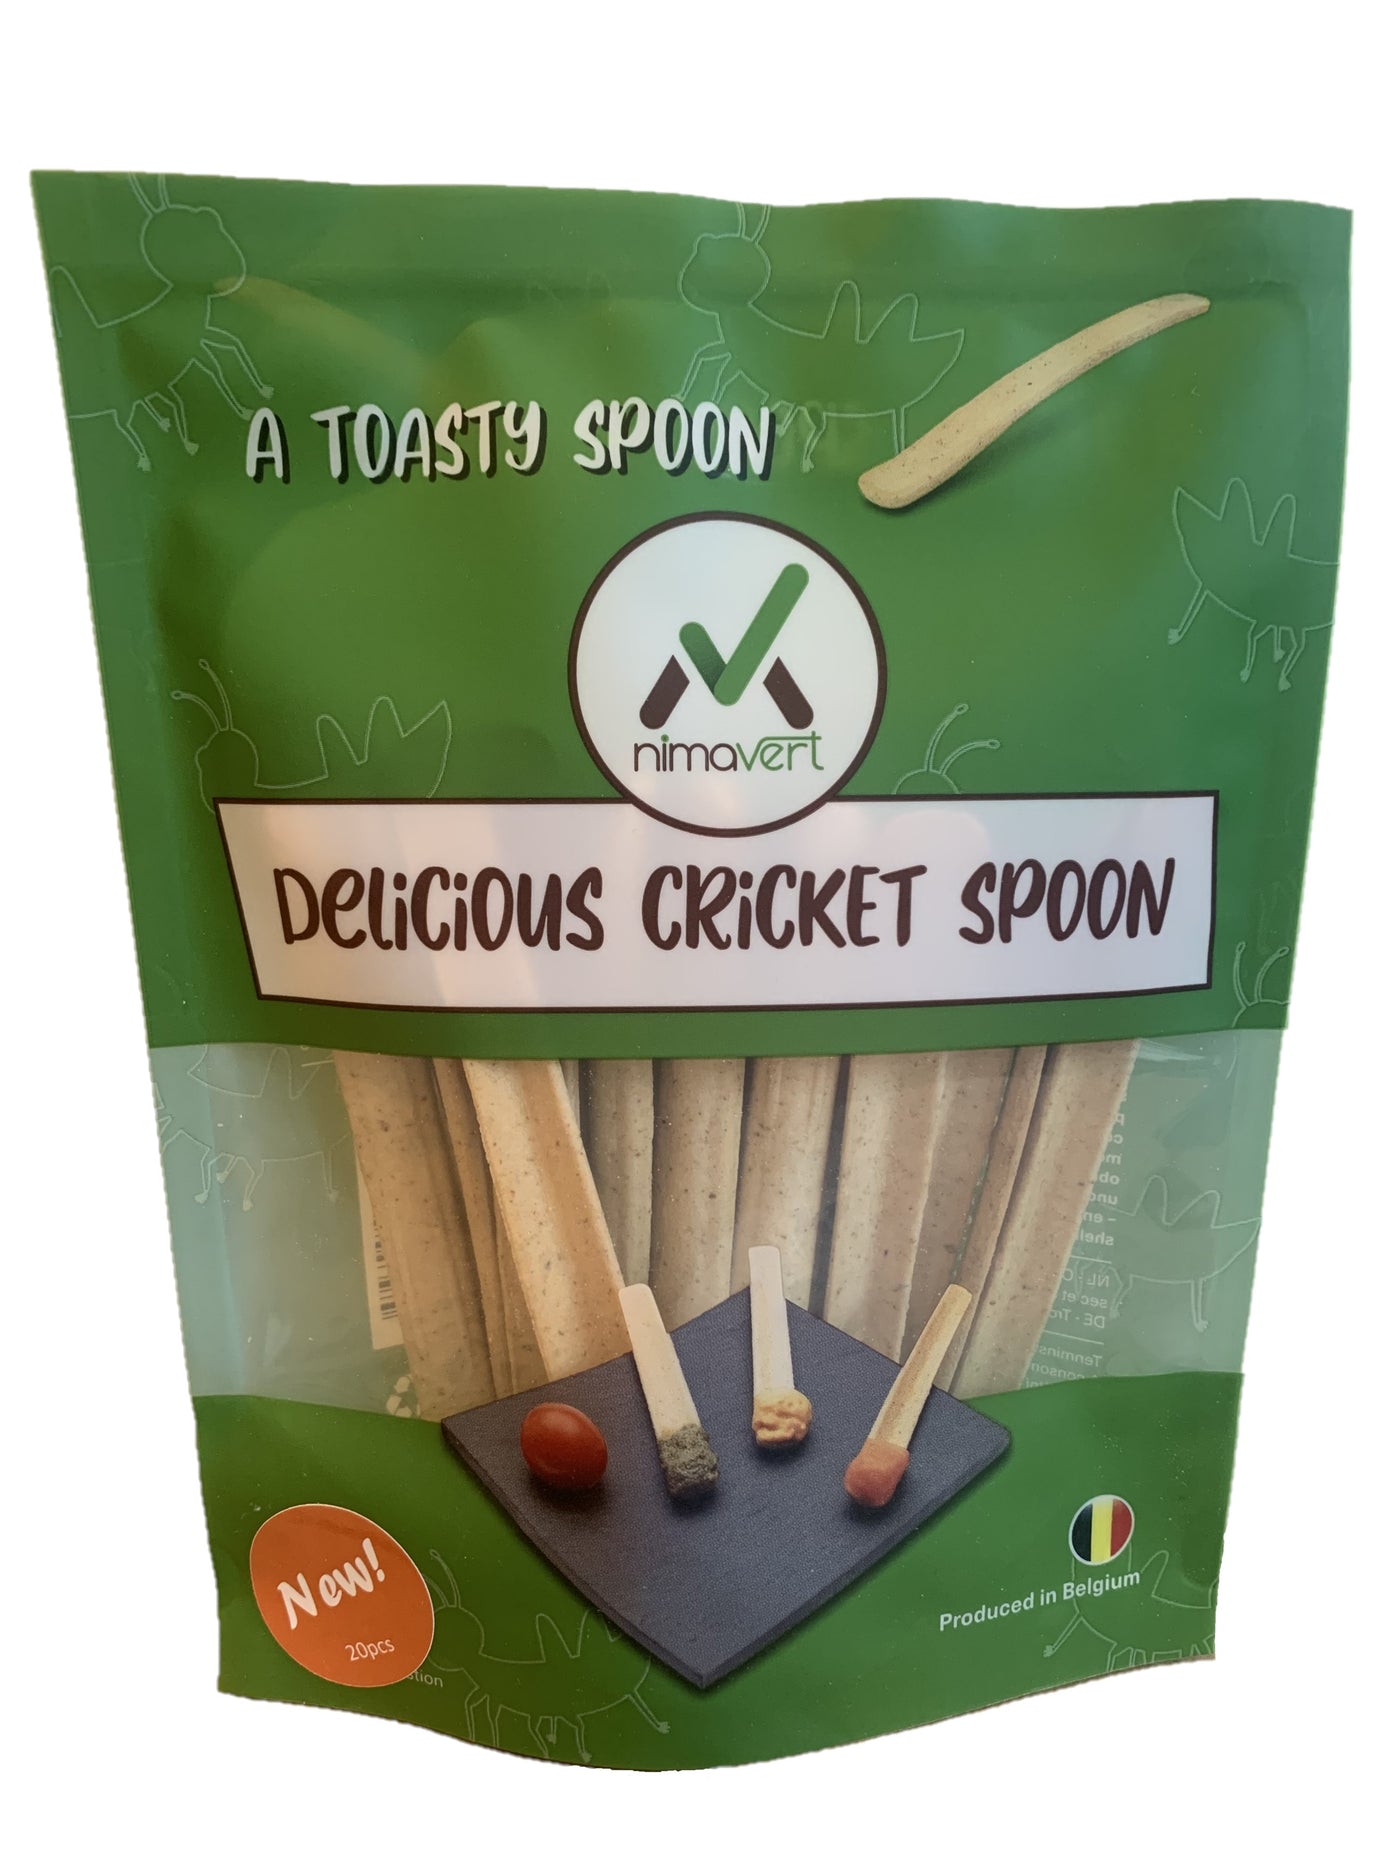 Delicious cricket spoon (200g / 20pce)